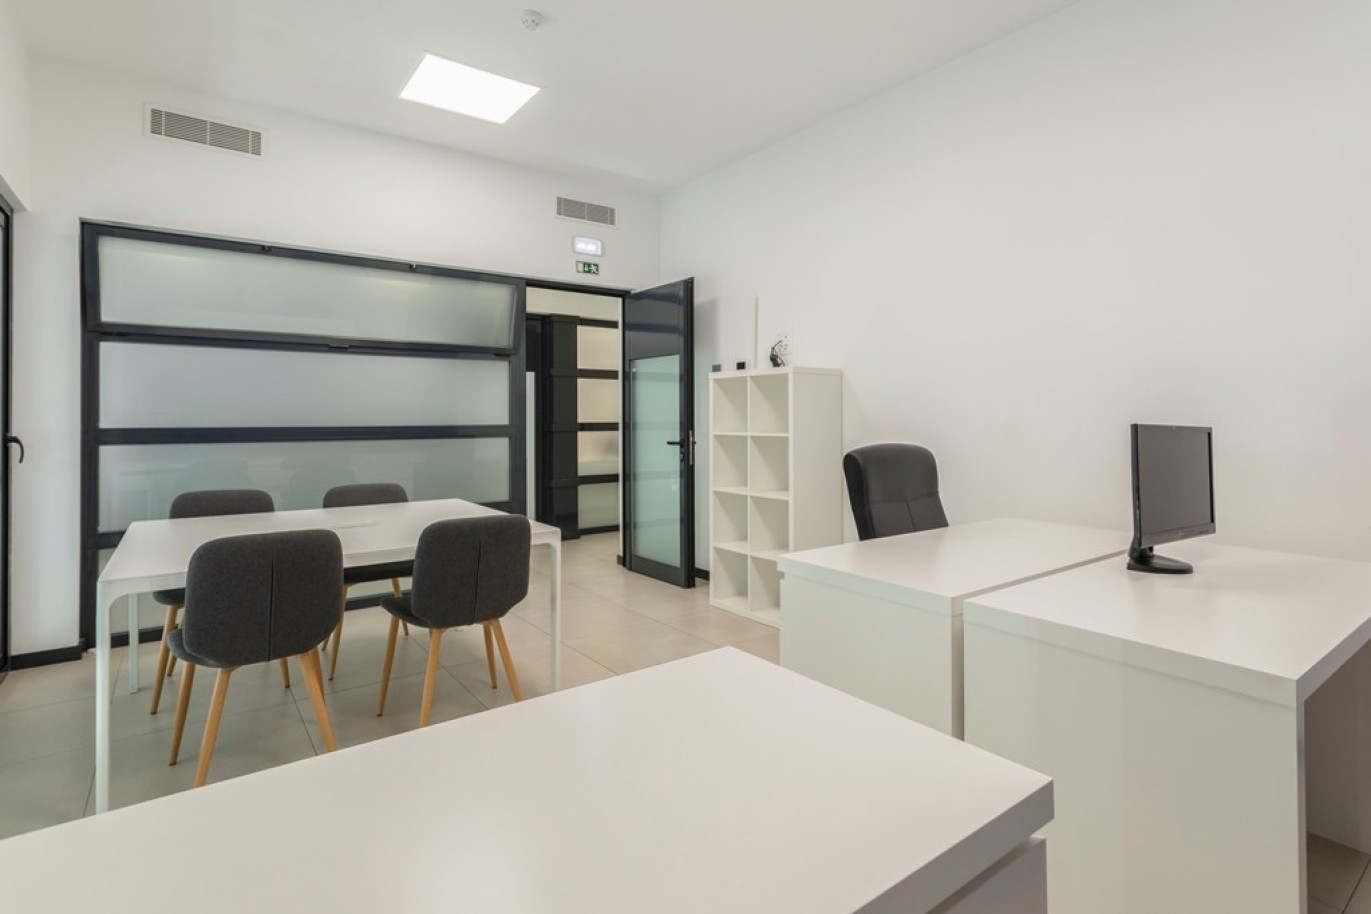 Edifício com 14 escritórios, para venda no centro de Loulé, Algarve_257598